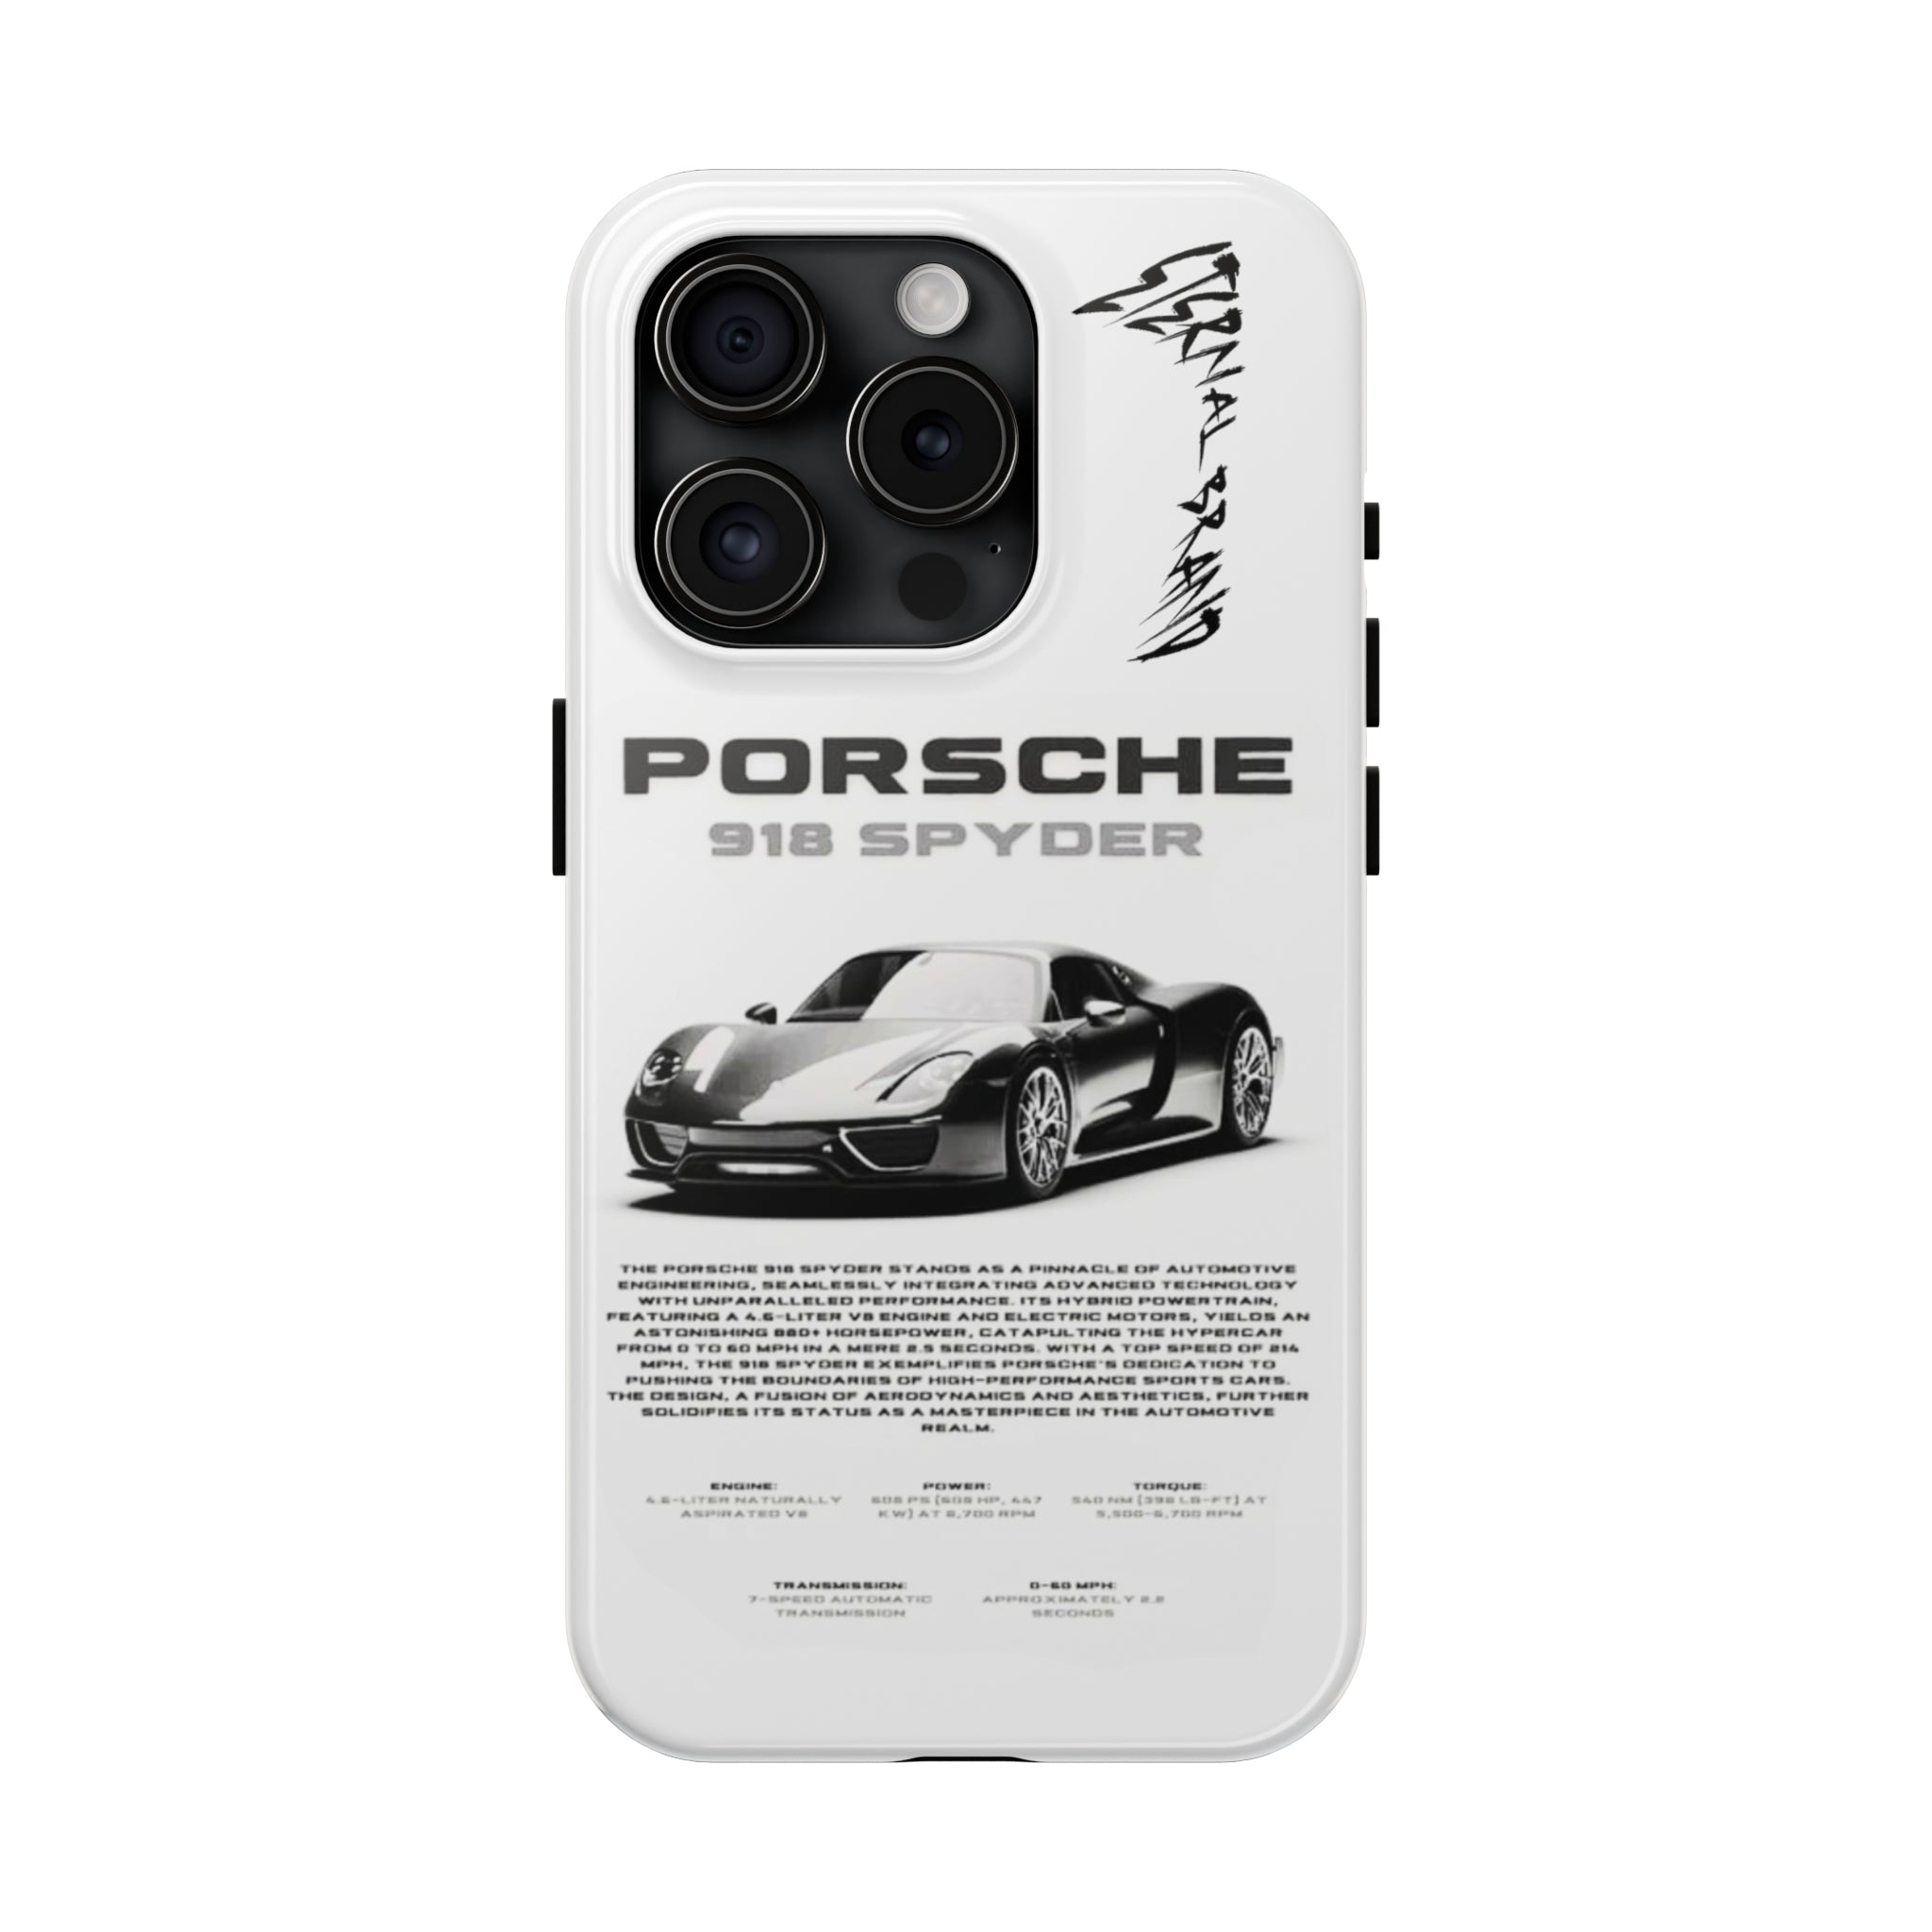 Porsche 918 Spyder "Void"